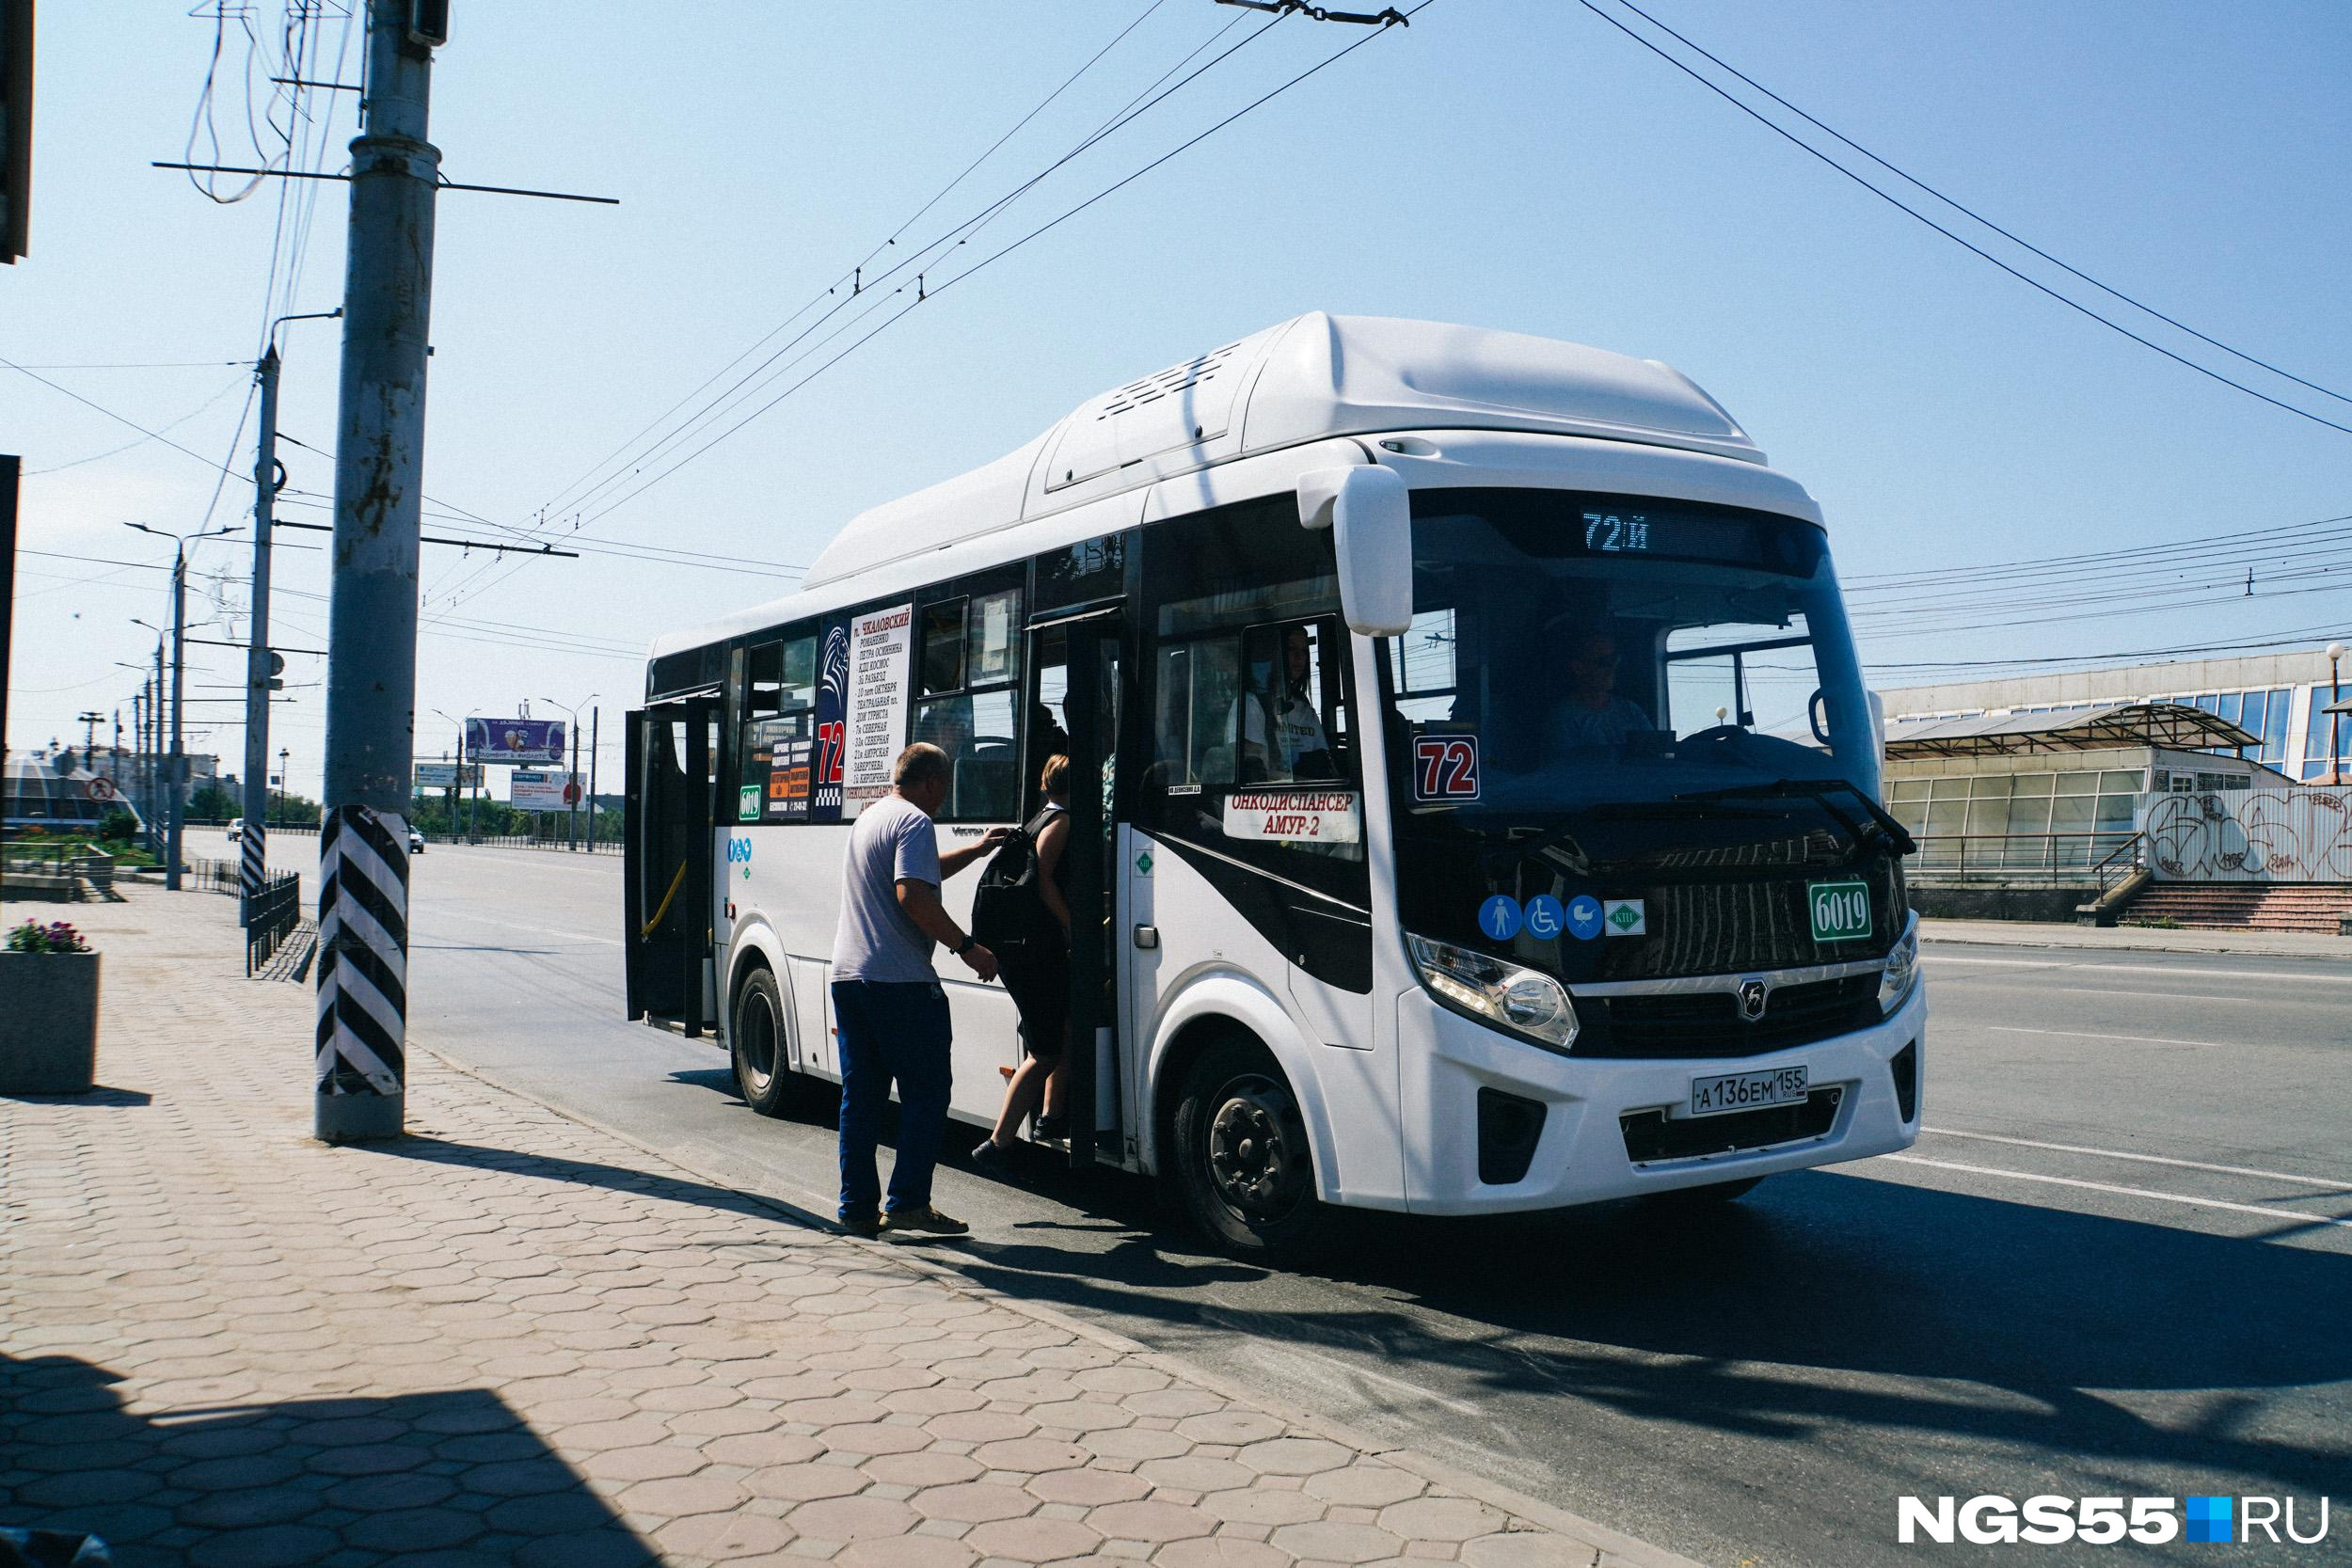 В Омске подорожают проездные. Сколько они будут стоить?